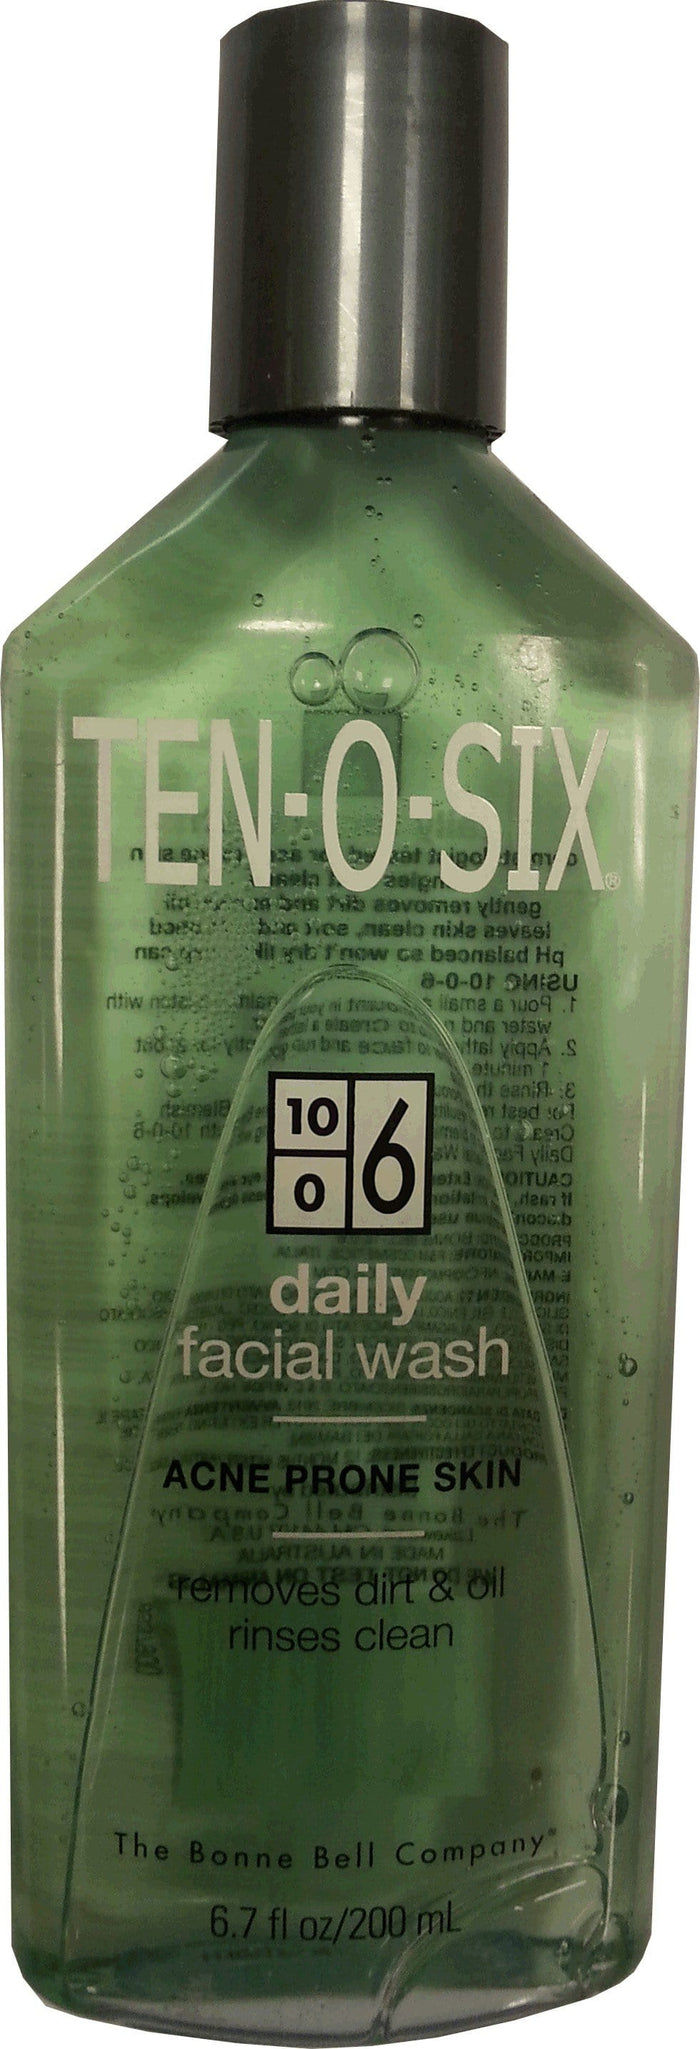 Ten-o-six Daily Facial Wash 200 ml